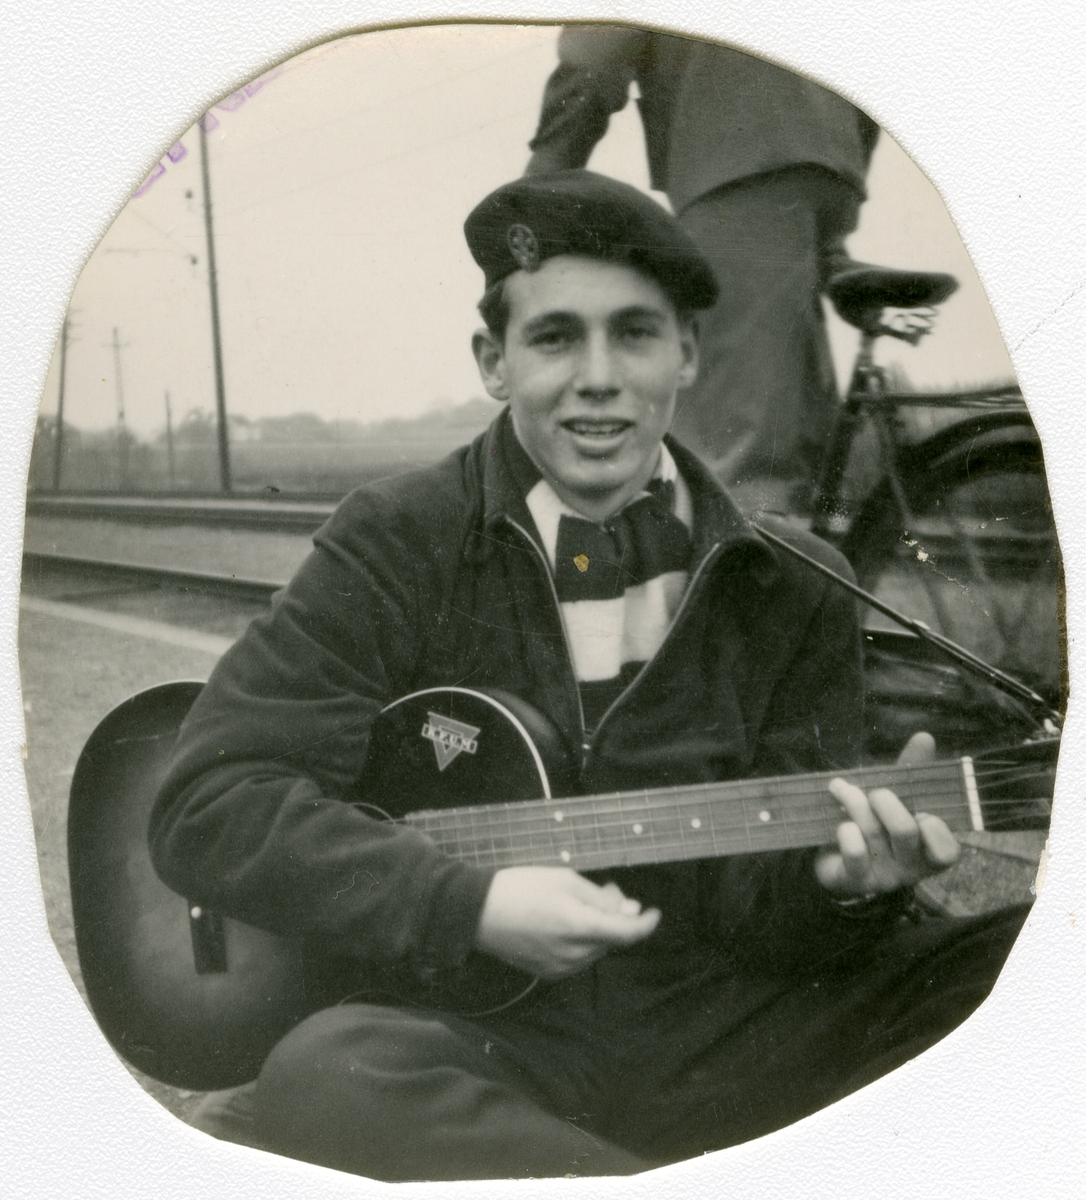 Foto av forfatter Tor Åge Bringsværd med gitar på 1950-tallet

KFUM klistremerke kan sees på gitaren